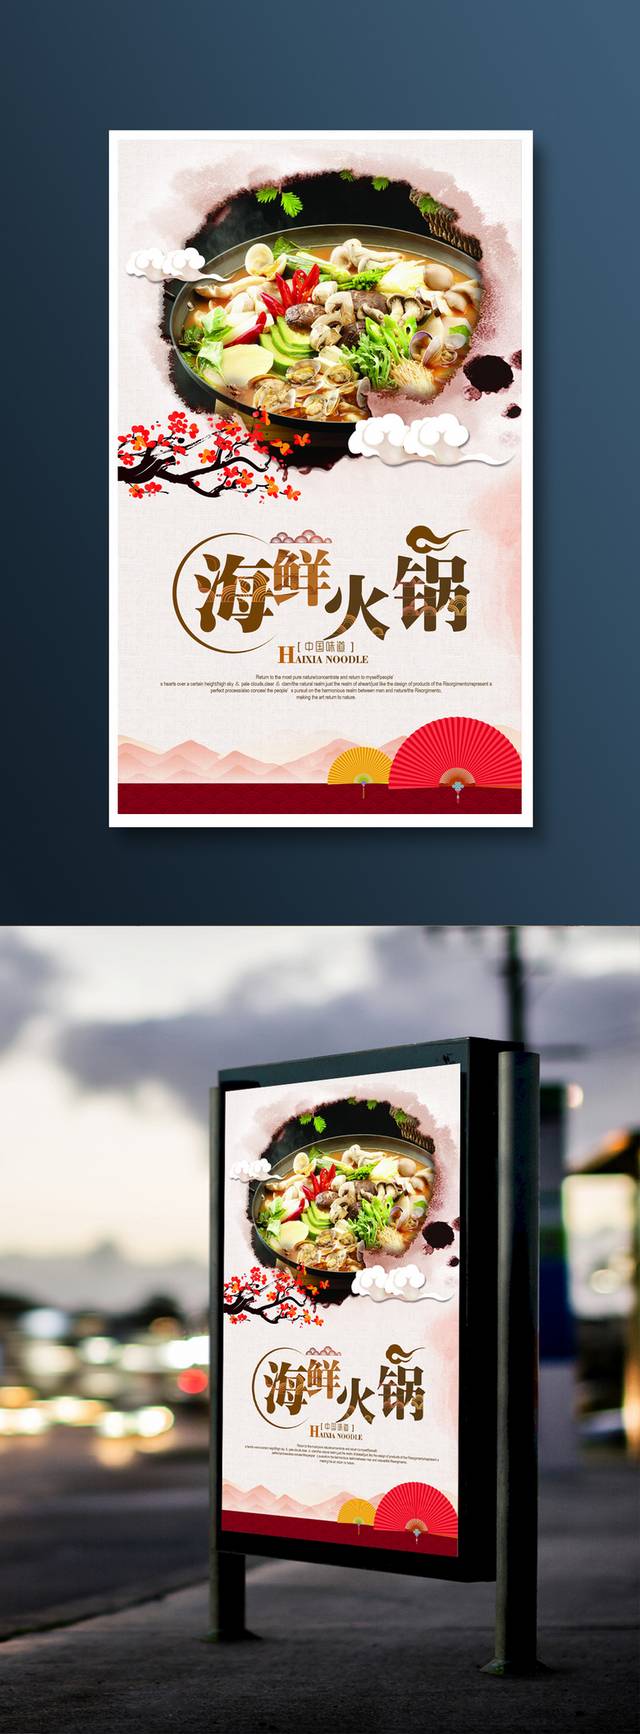 精美高档海鲜火锅宣传海报设计